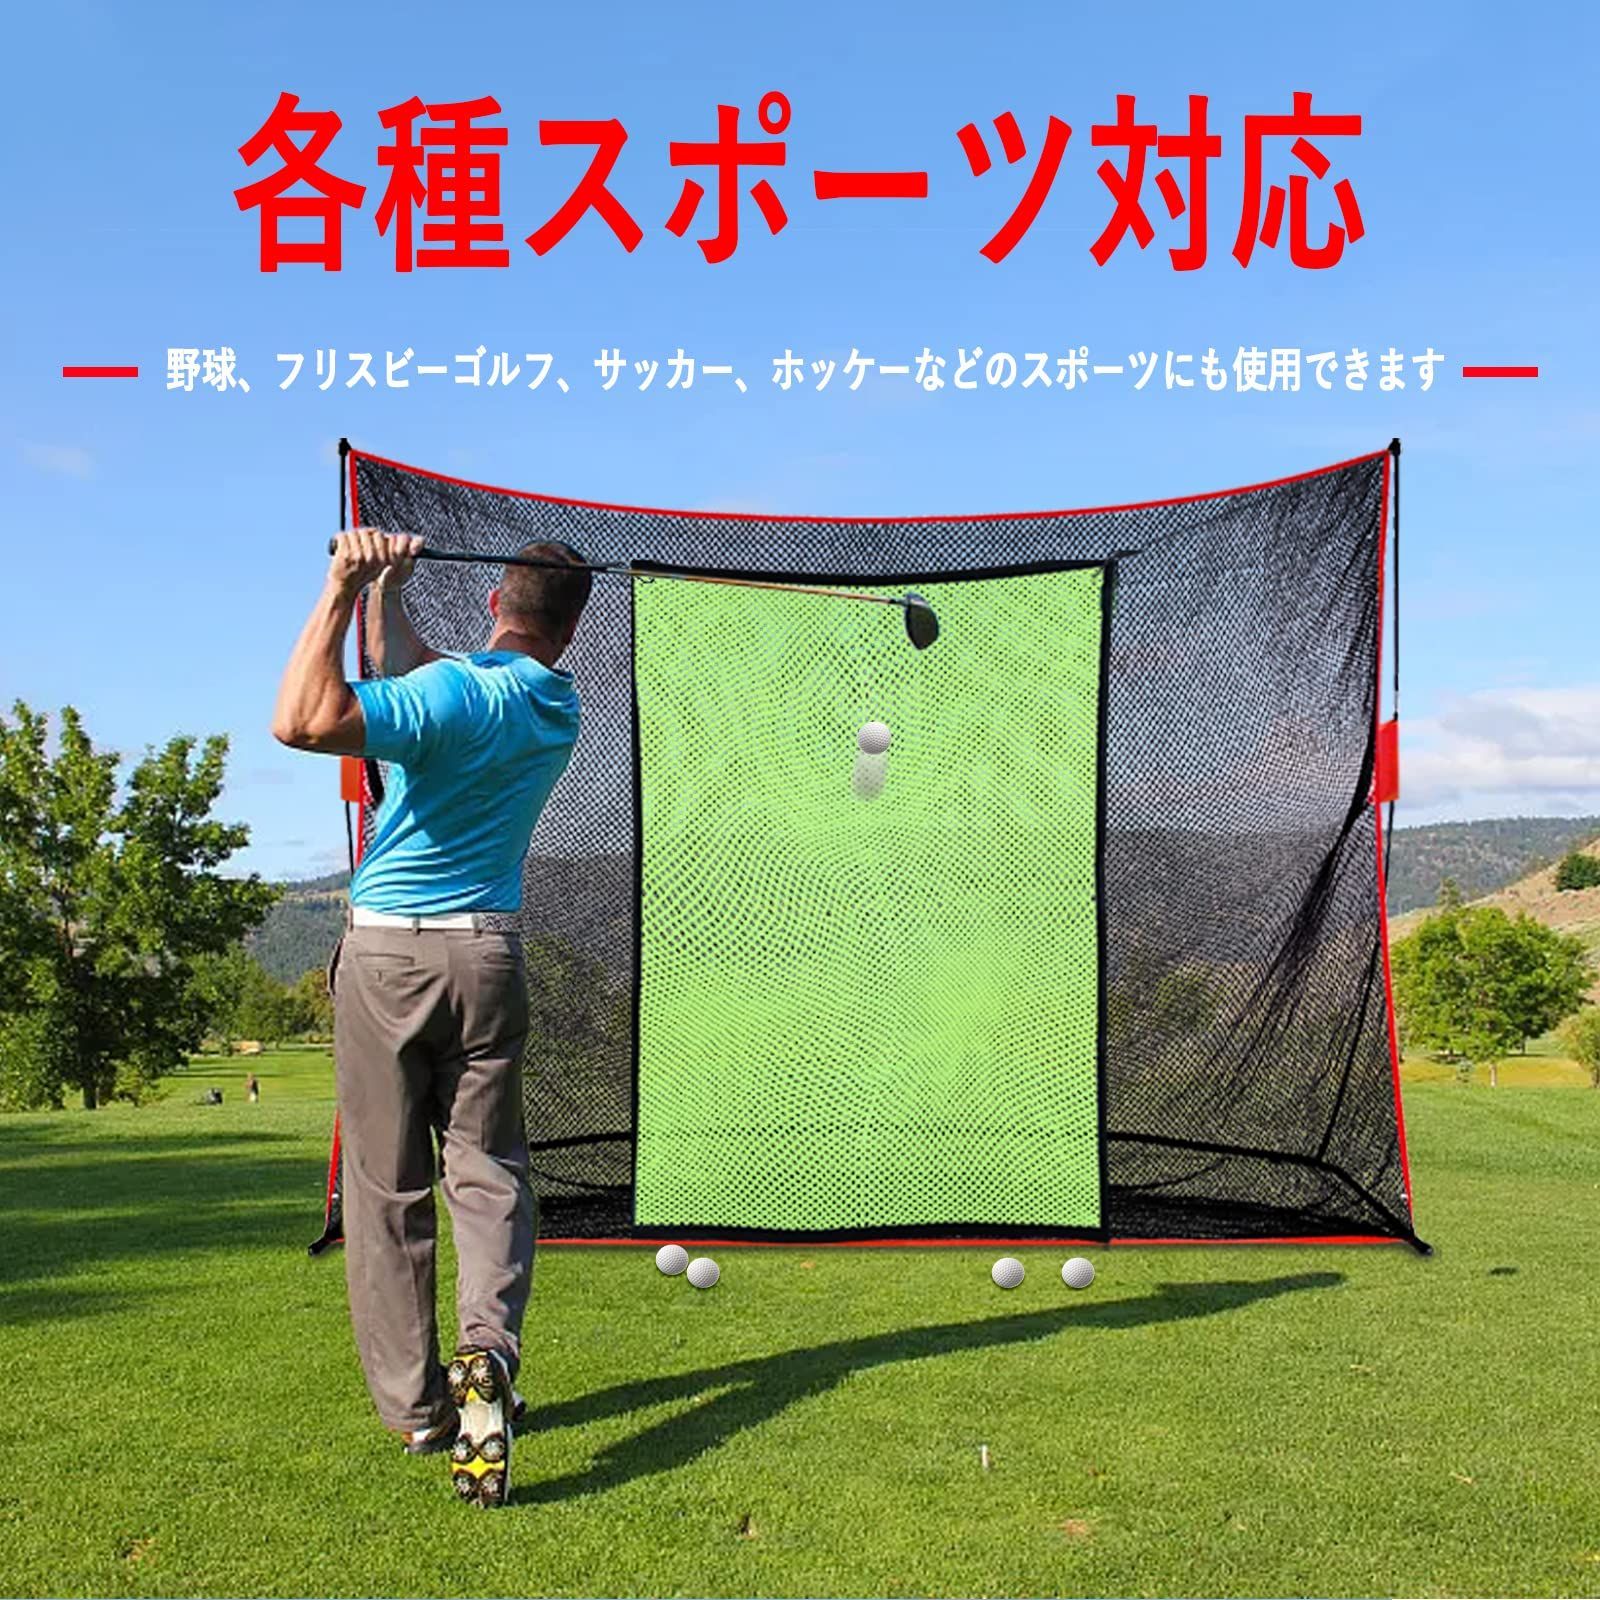 ☆人気商品☆】ORCHID ゴルフネット ゴルフ練習ネット 3×6m 防球ネット